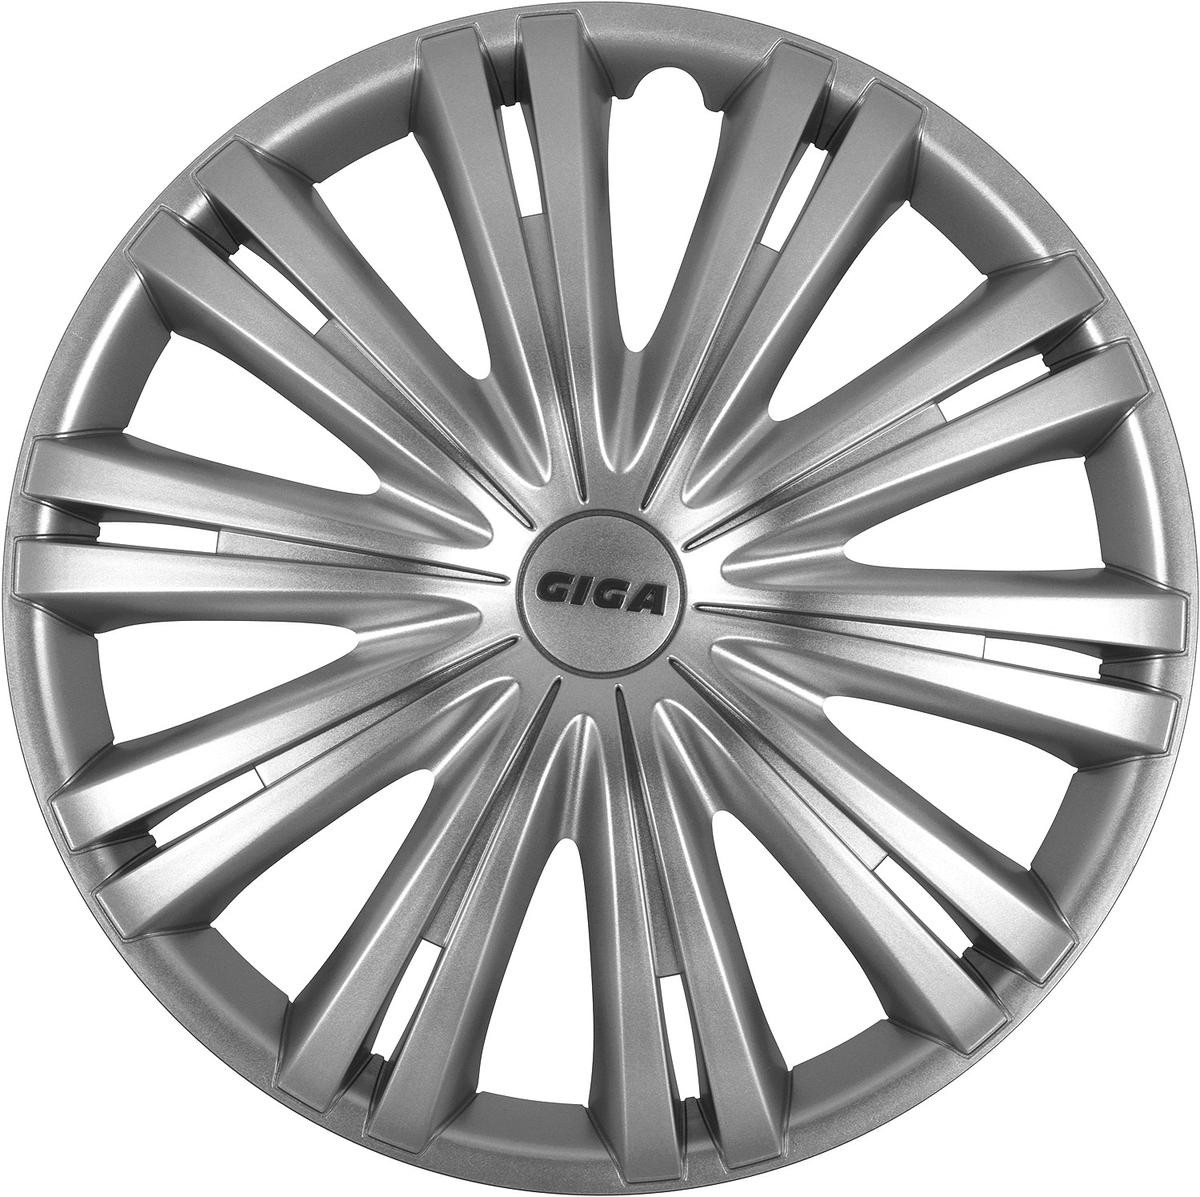 Car hubcaps Silver ARGO 13GIGA